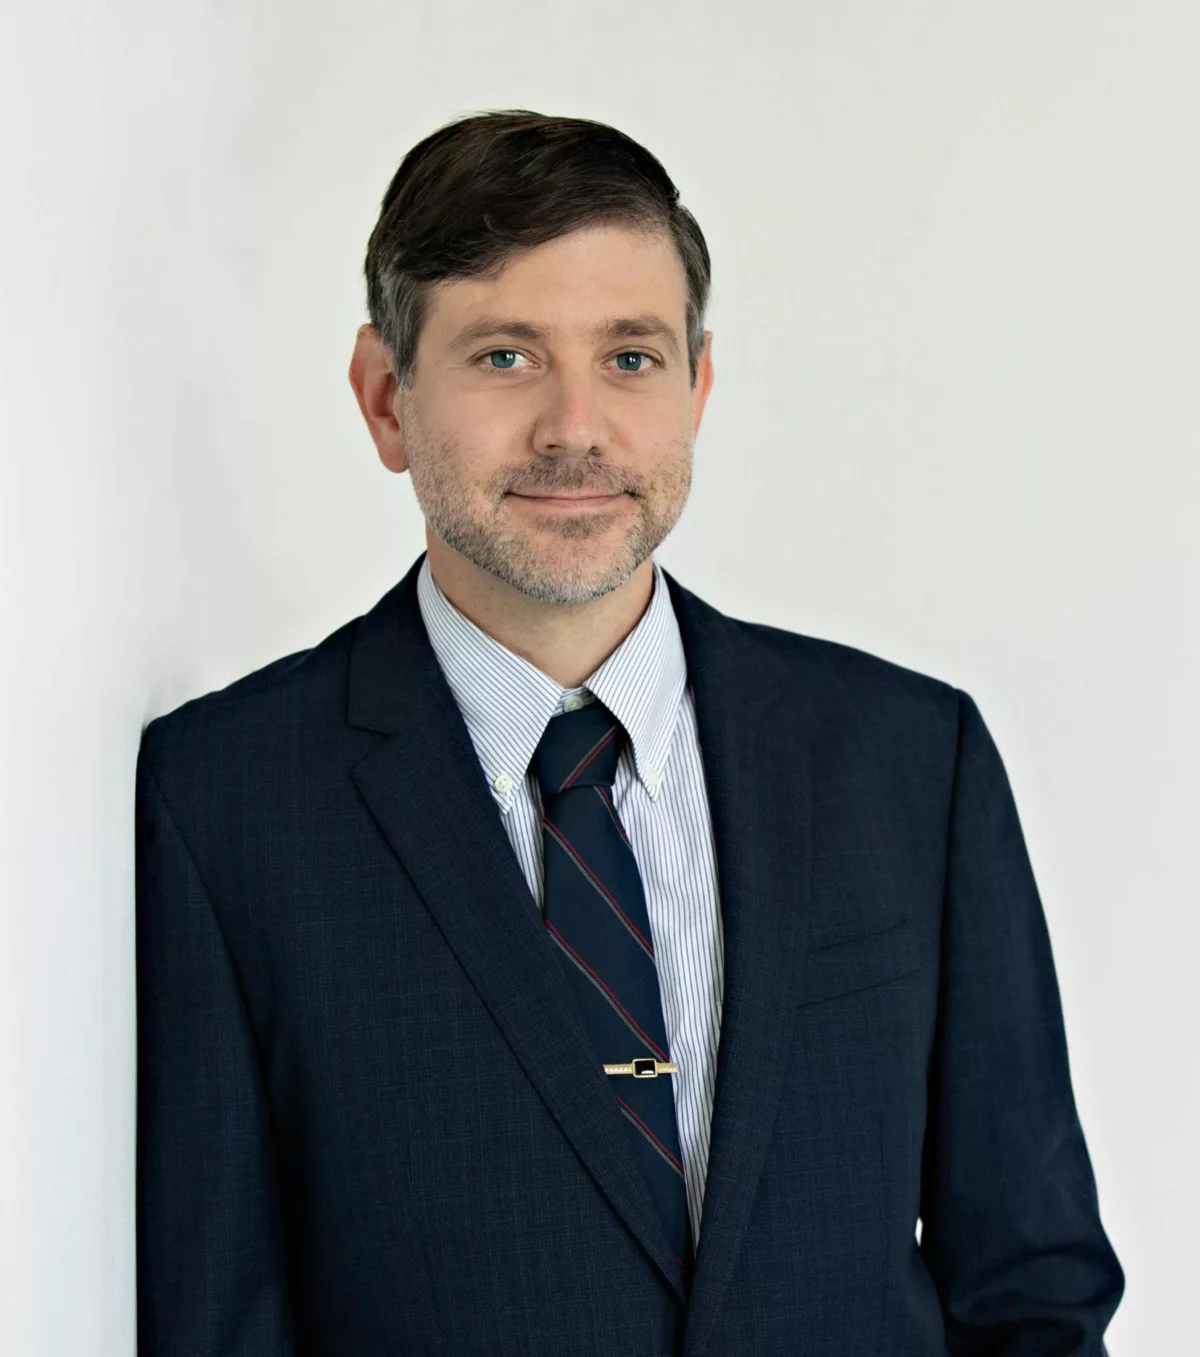 Michael Gorwitz